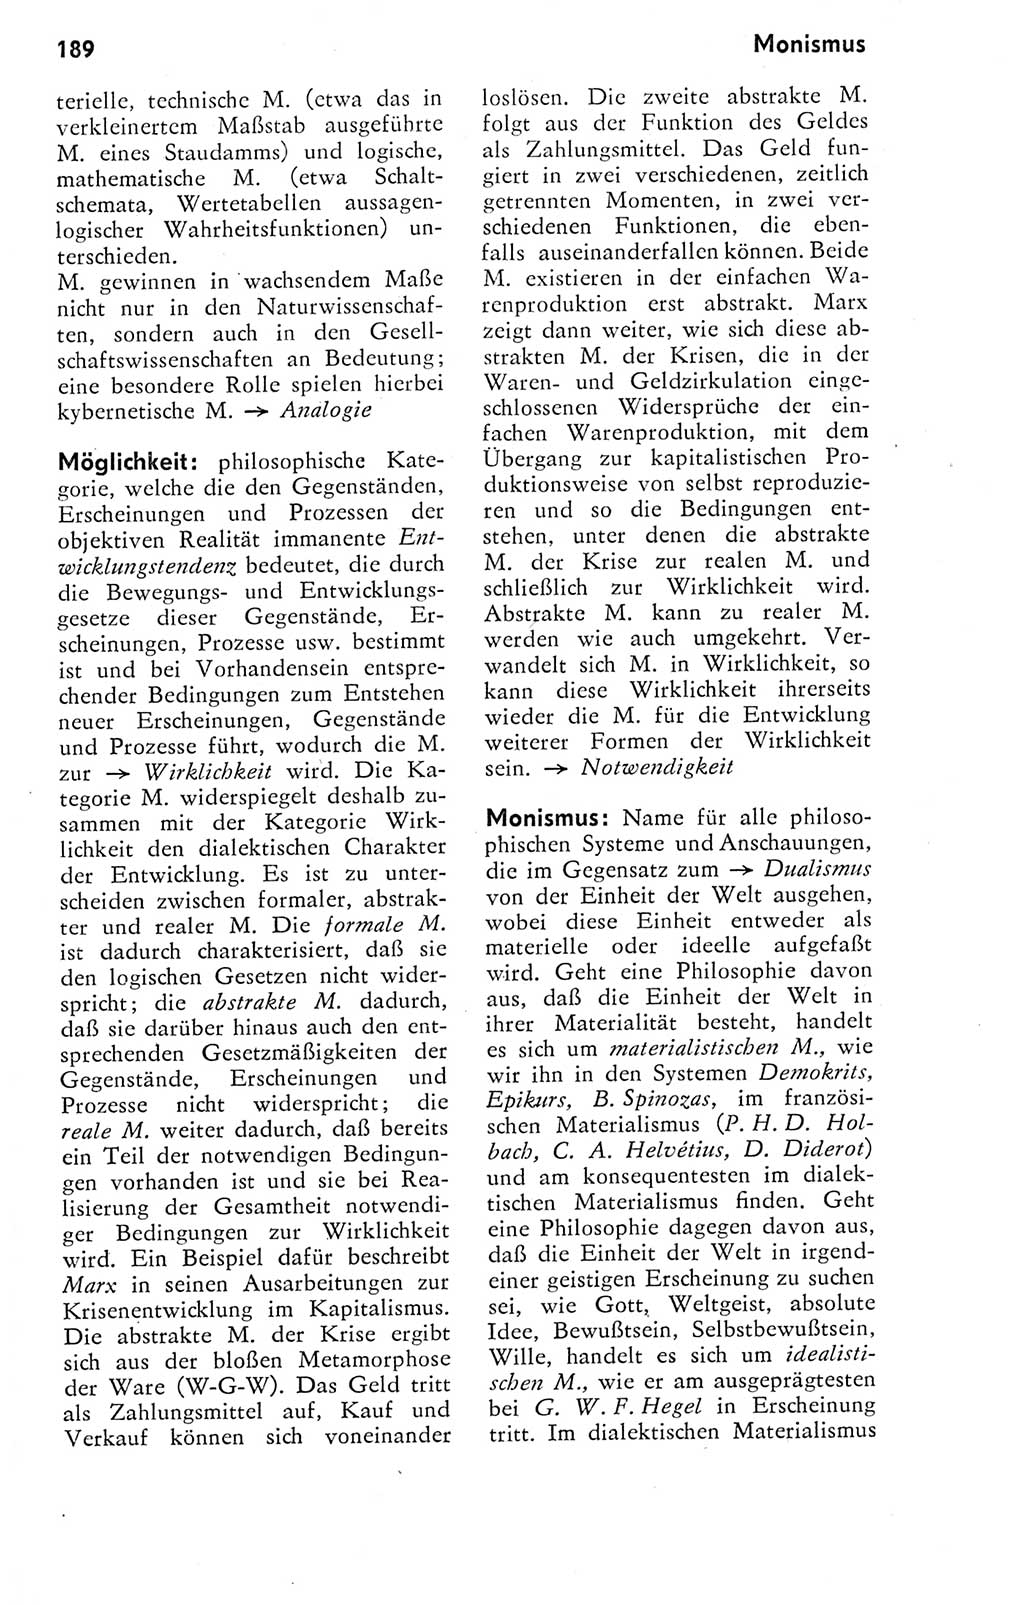 Kleines Wörterbuch der marxistisch-leninistischen Philosophie [Deutsche Demokratische Republik (DDR)] 1974, Seite 174 (Kl. Wb. ML Phil. DDR 1974, S. 174)